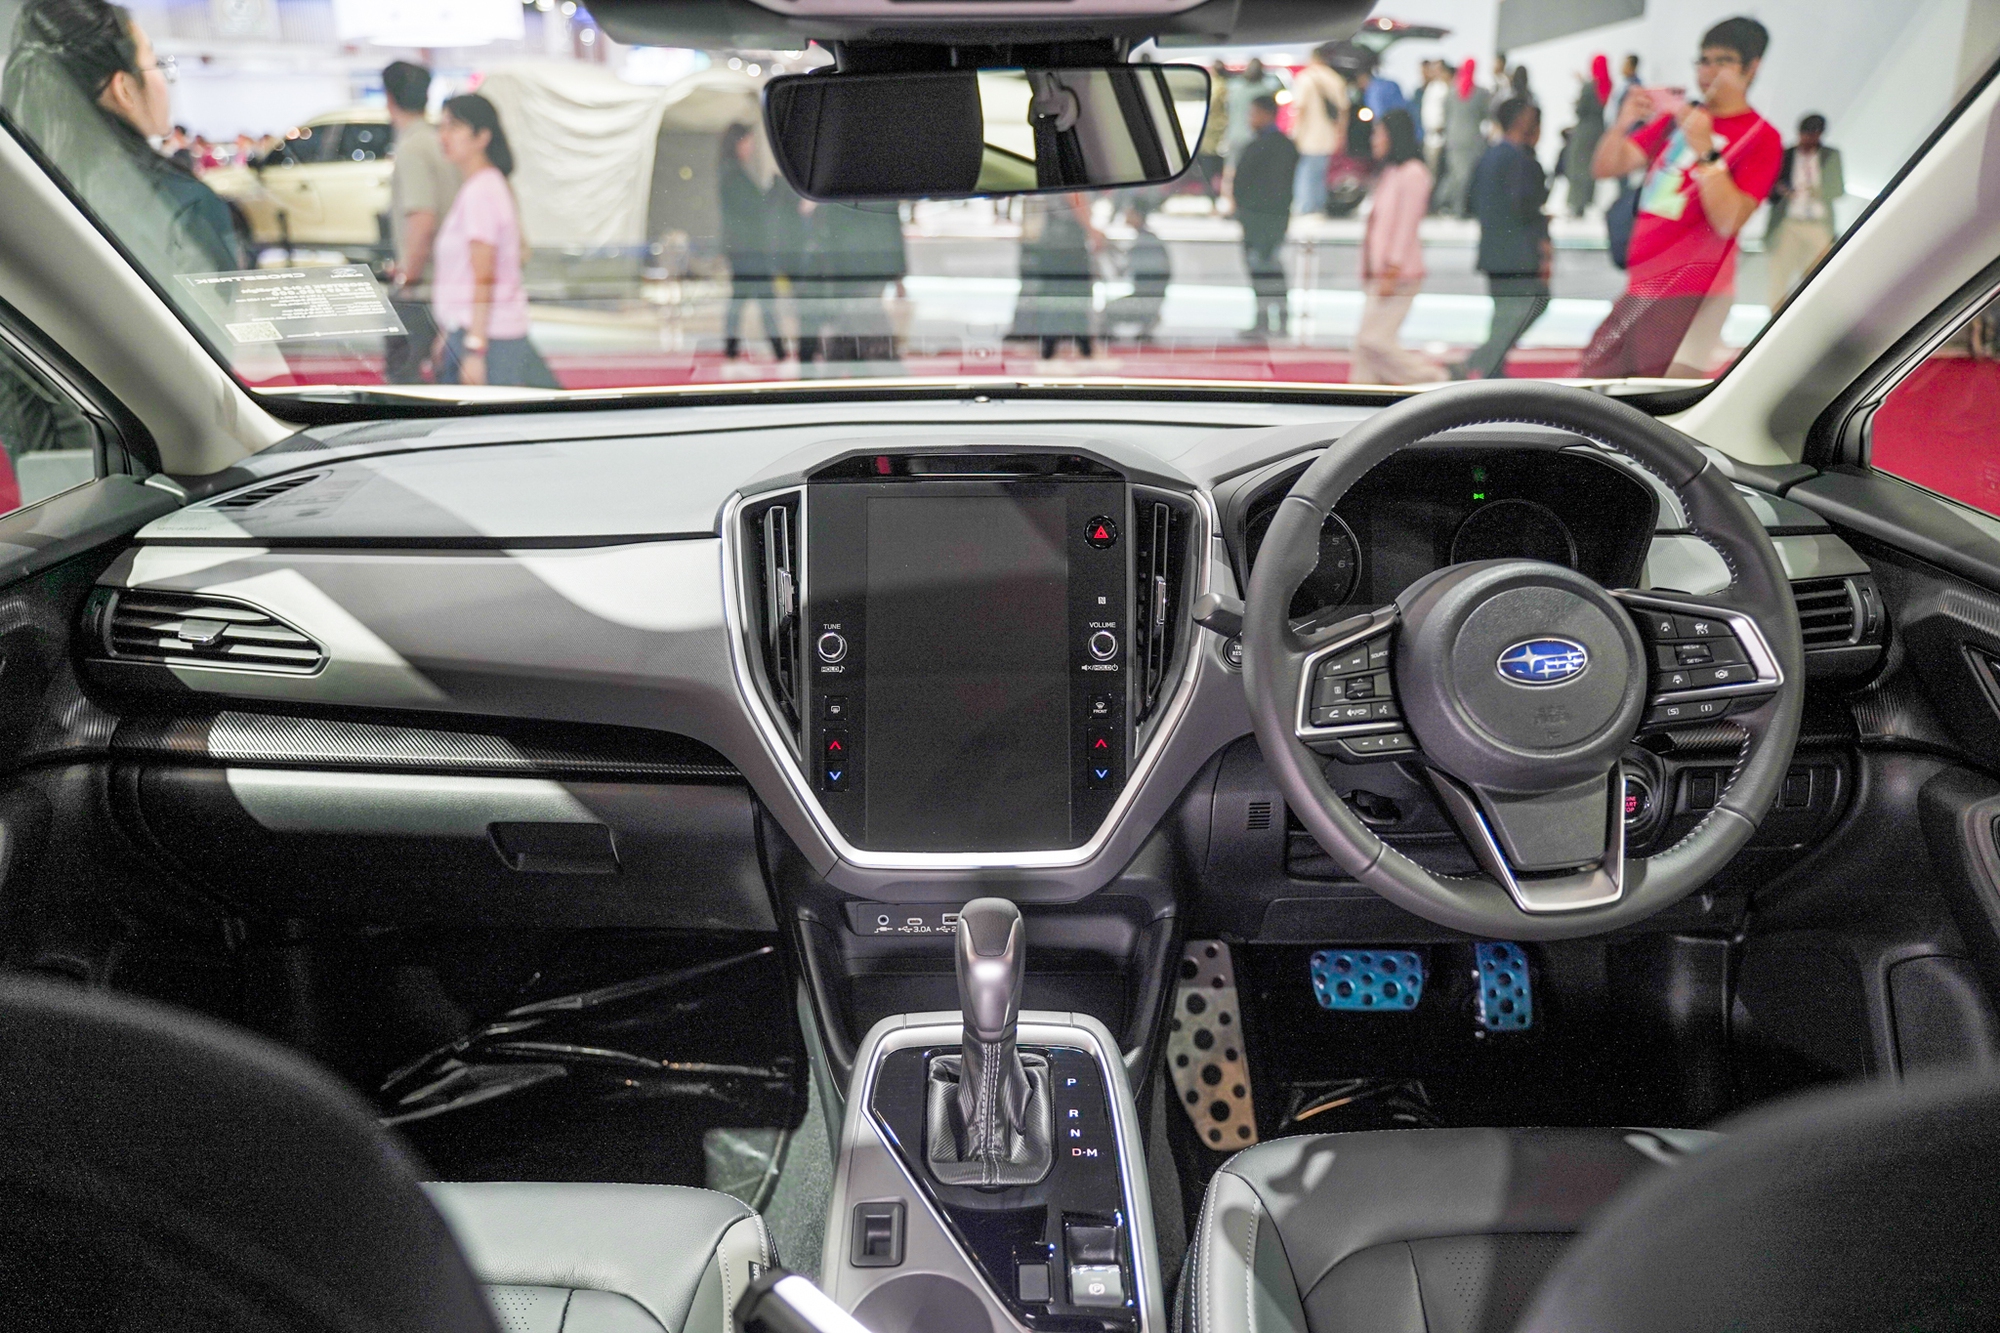 Xem trước Subaru Crosstrek đã lên lịch về Việt Nam: Nhiều công nghệ, giá quy đổi 820 triệu đồng tại Indonesia - Ảnh 6.